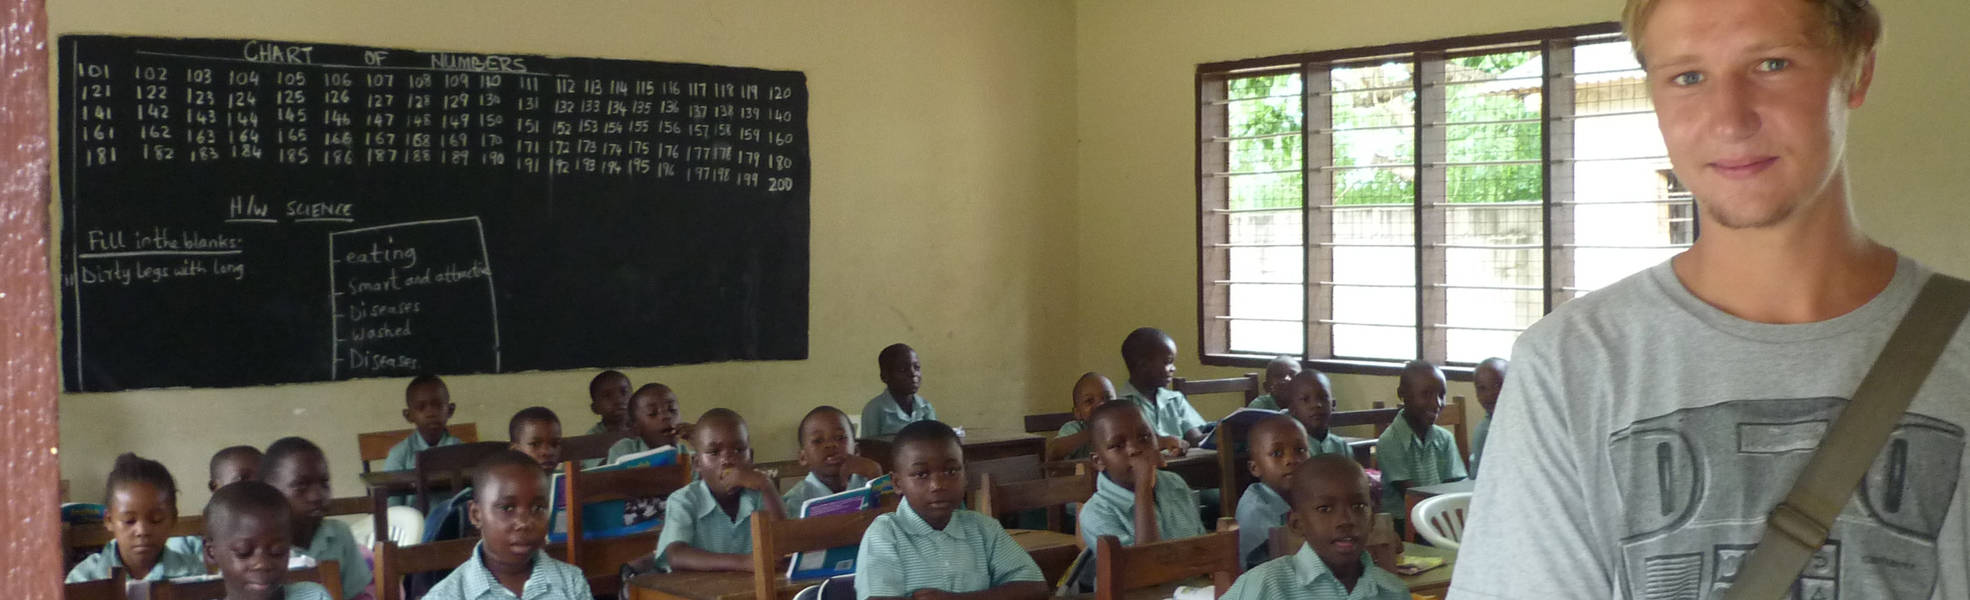 Volunteering at a primary school in Tanzania